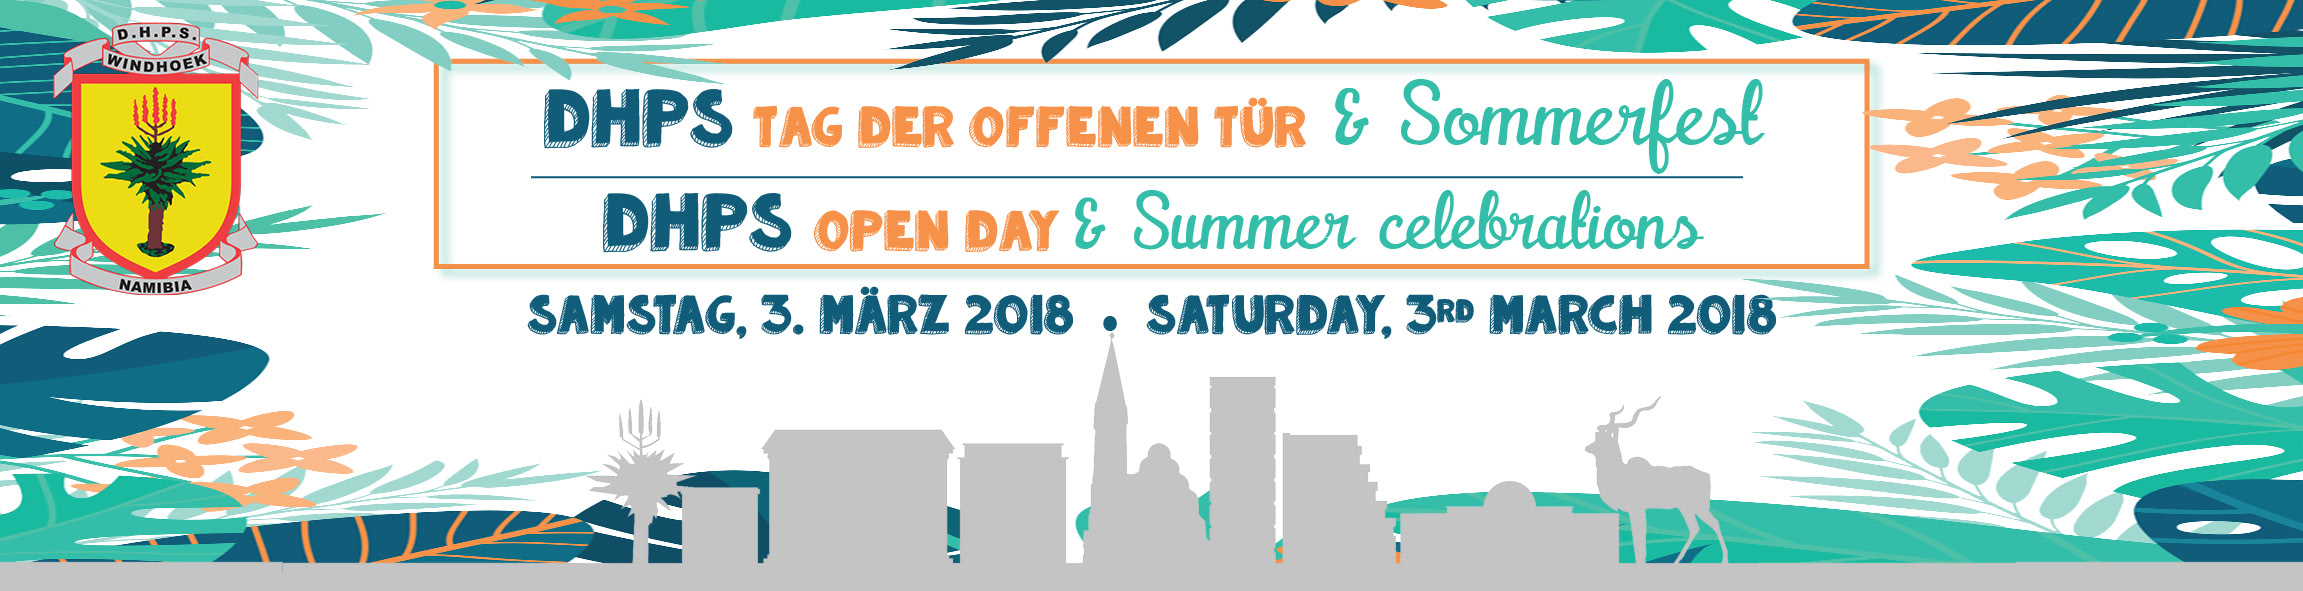 Open Day & DHPS Sommerfest